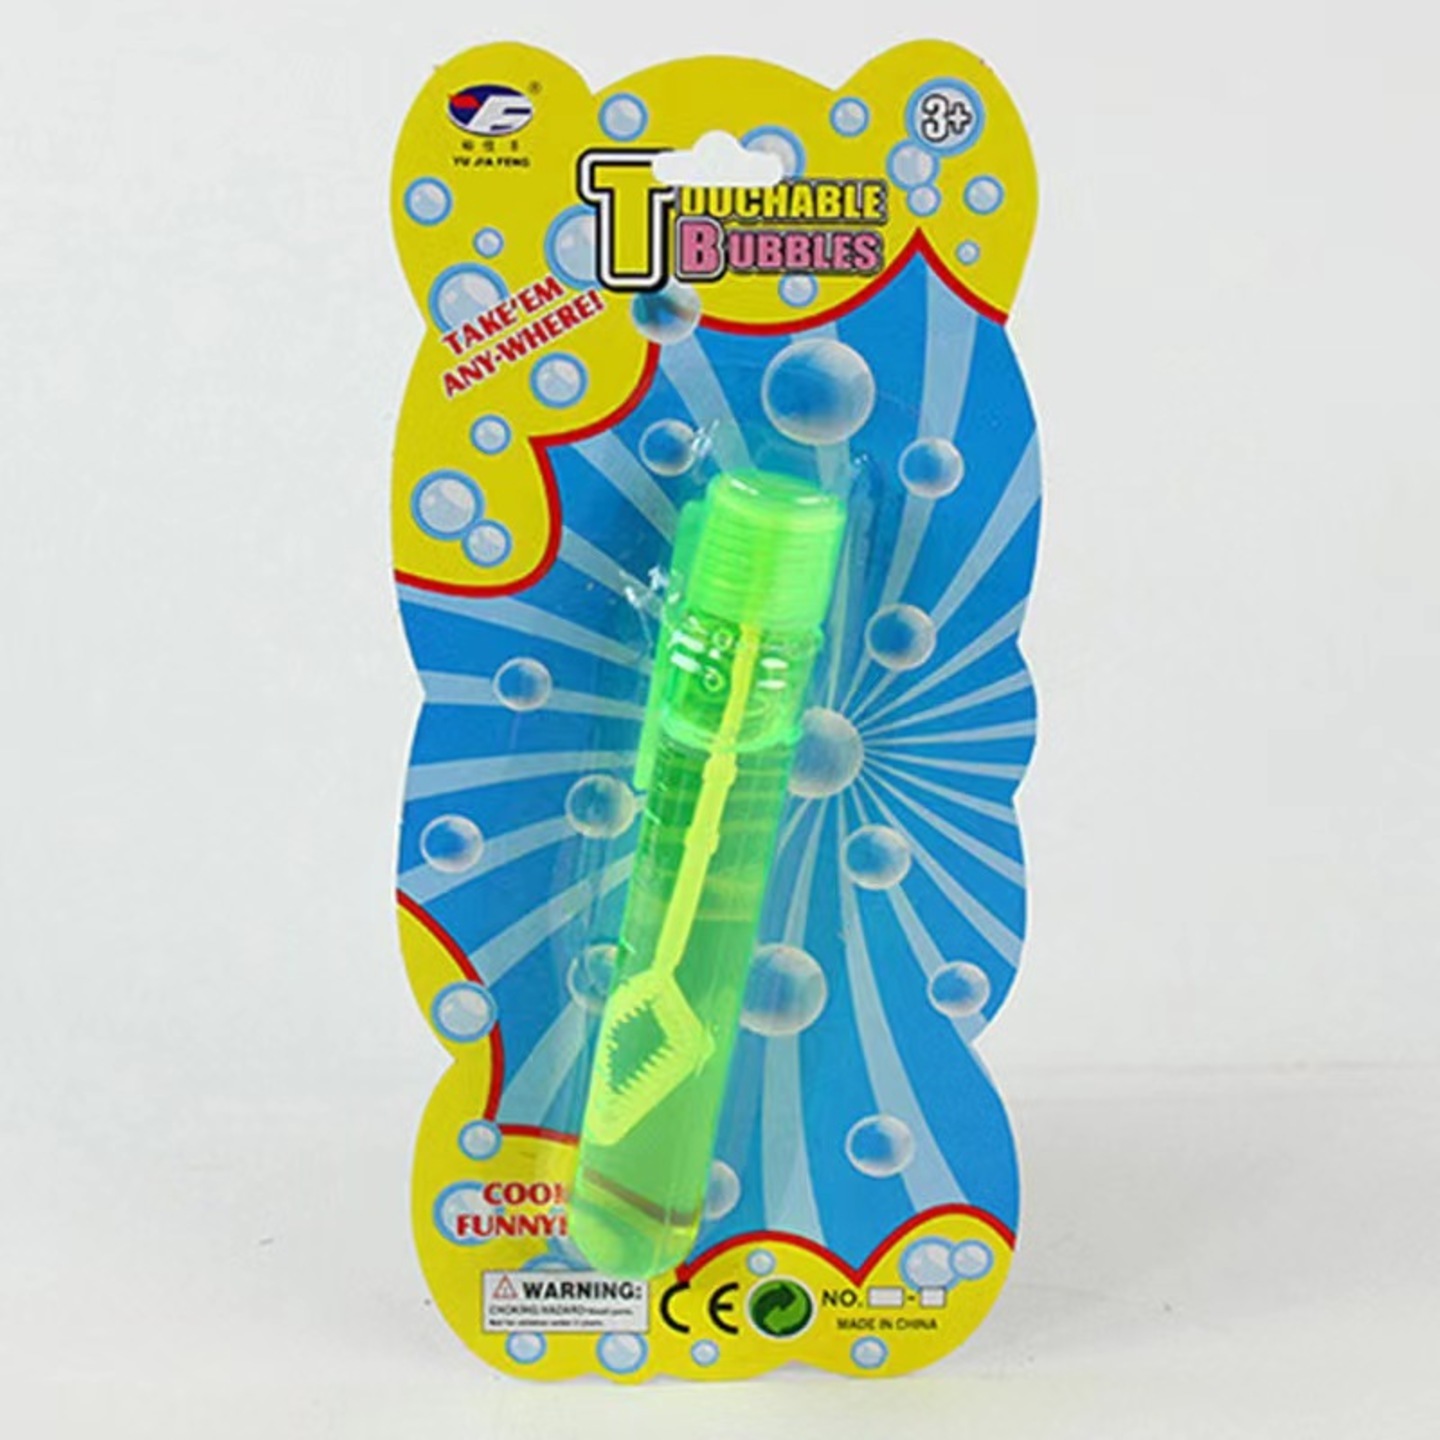 Touchable bubbles stackable fun toy （ Random colour ）